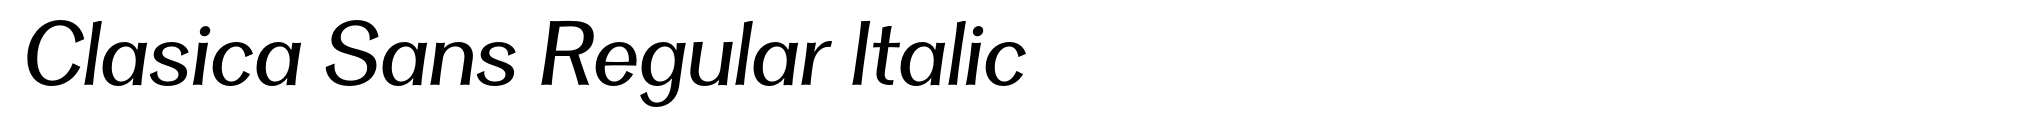 Clasica Sans Regular Italic image